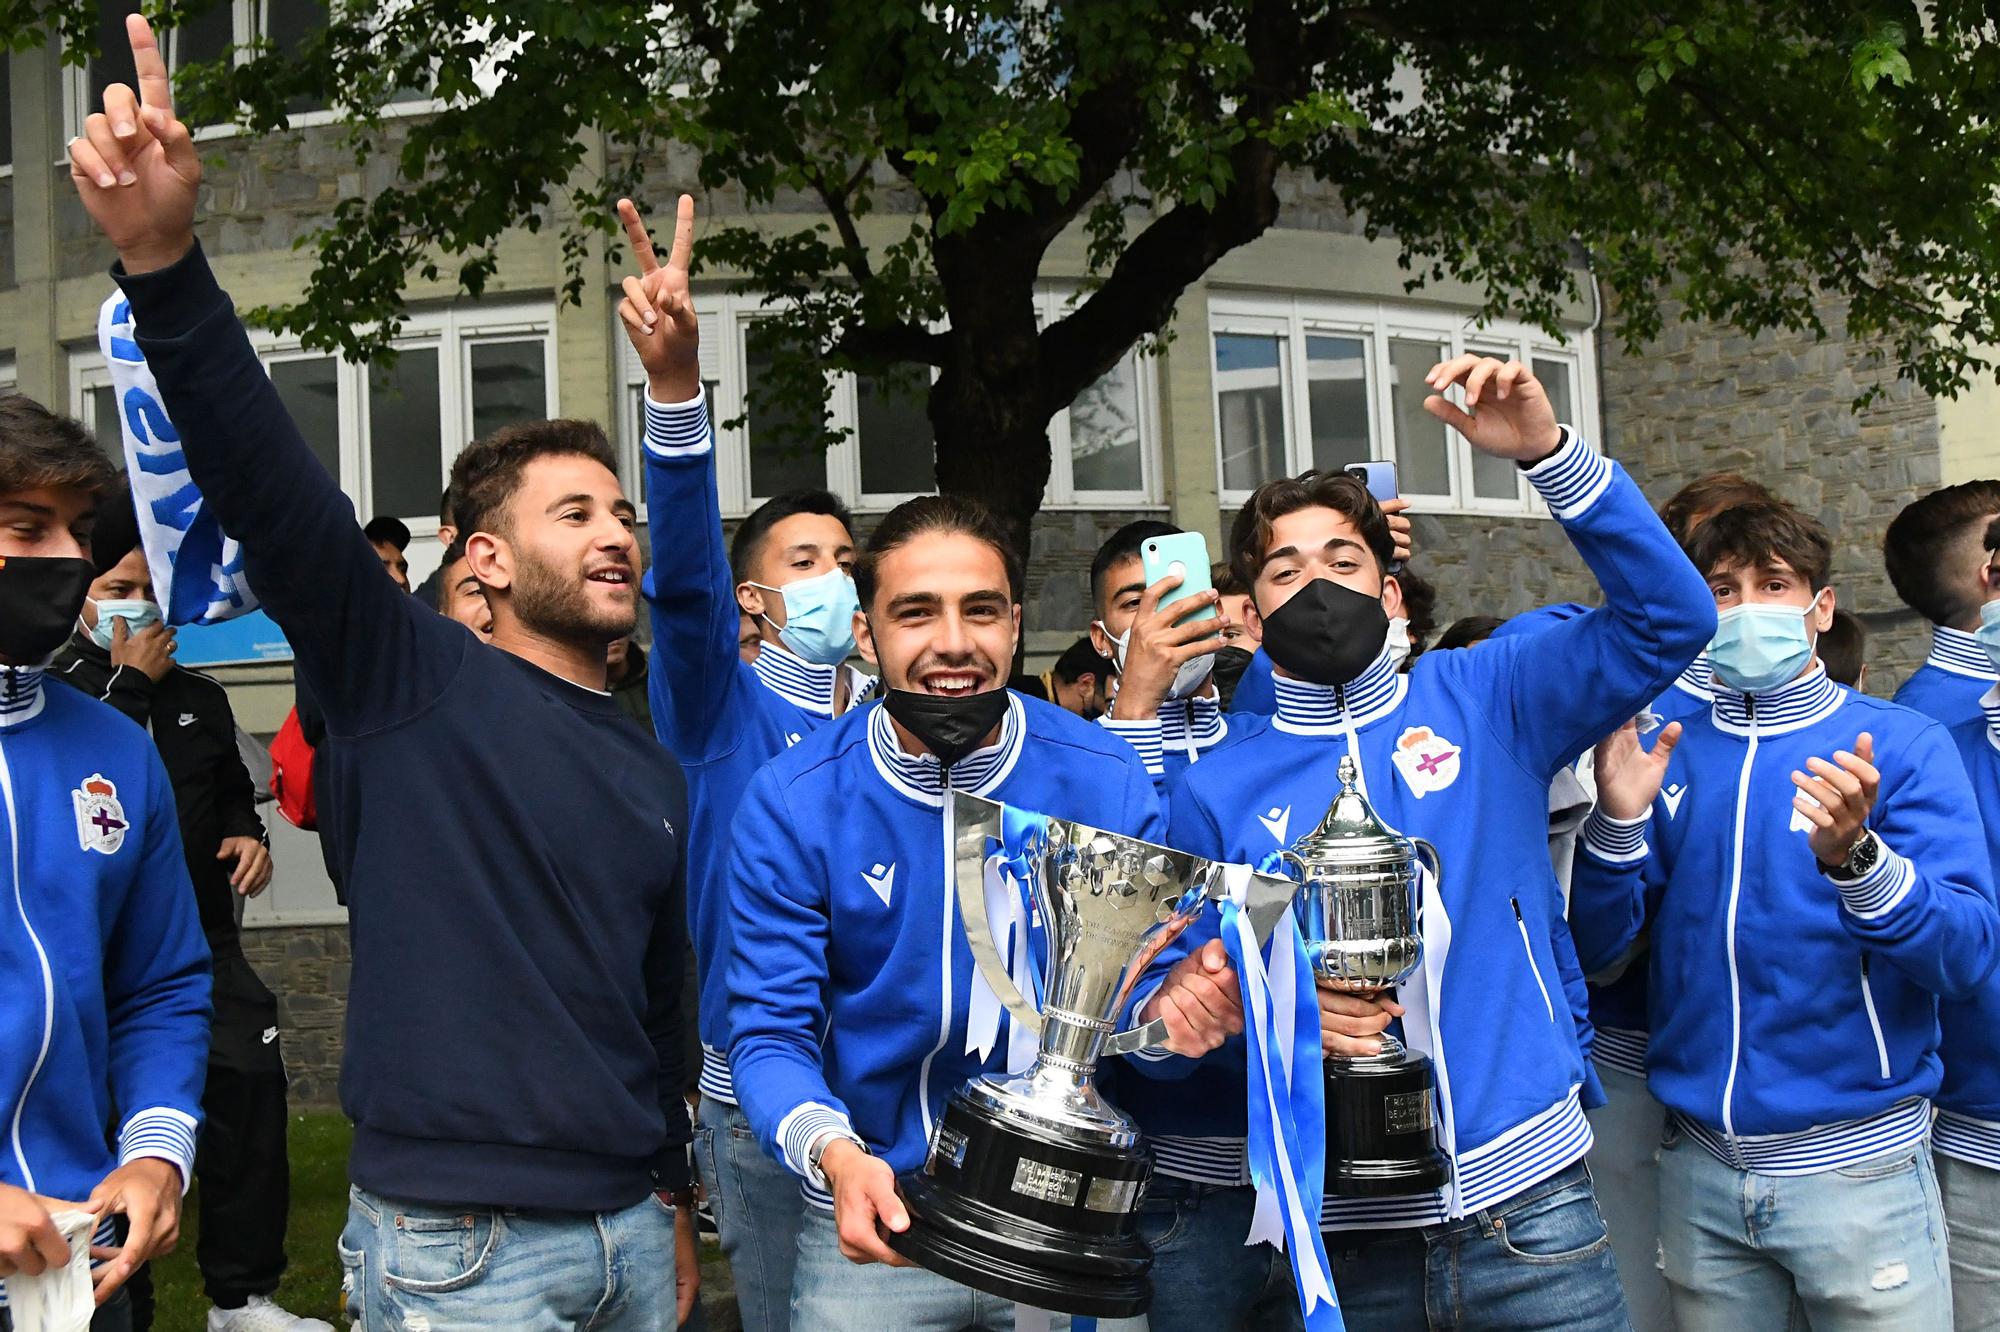 Los juveniles del Dépor celebran en A Coruña su Copa de Campeones